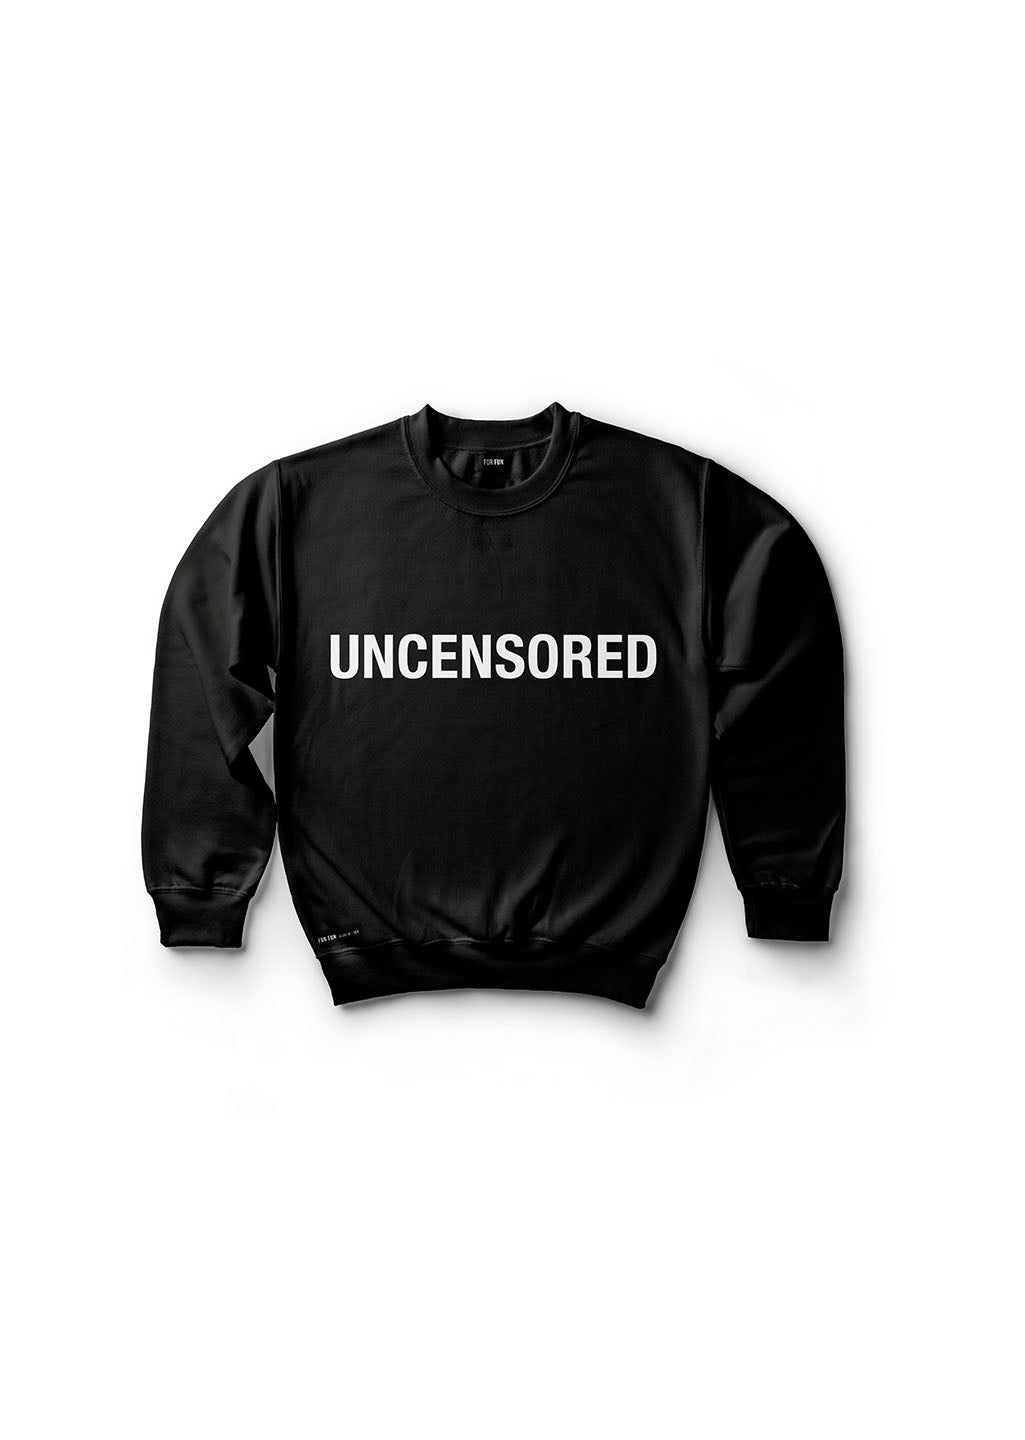 Uncensored / Sweatshirt